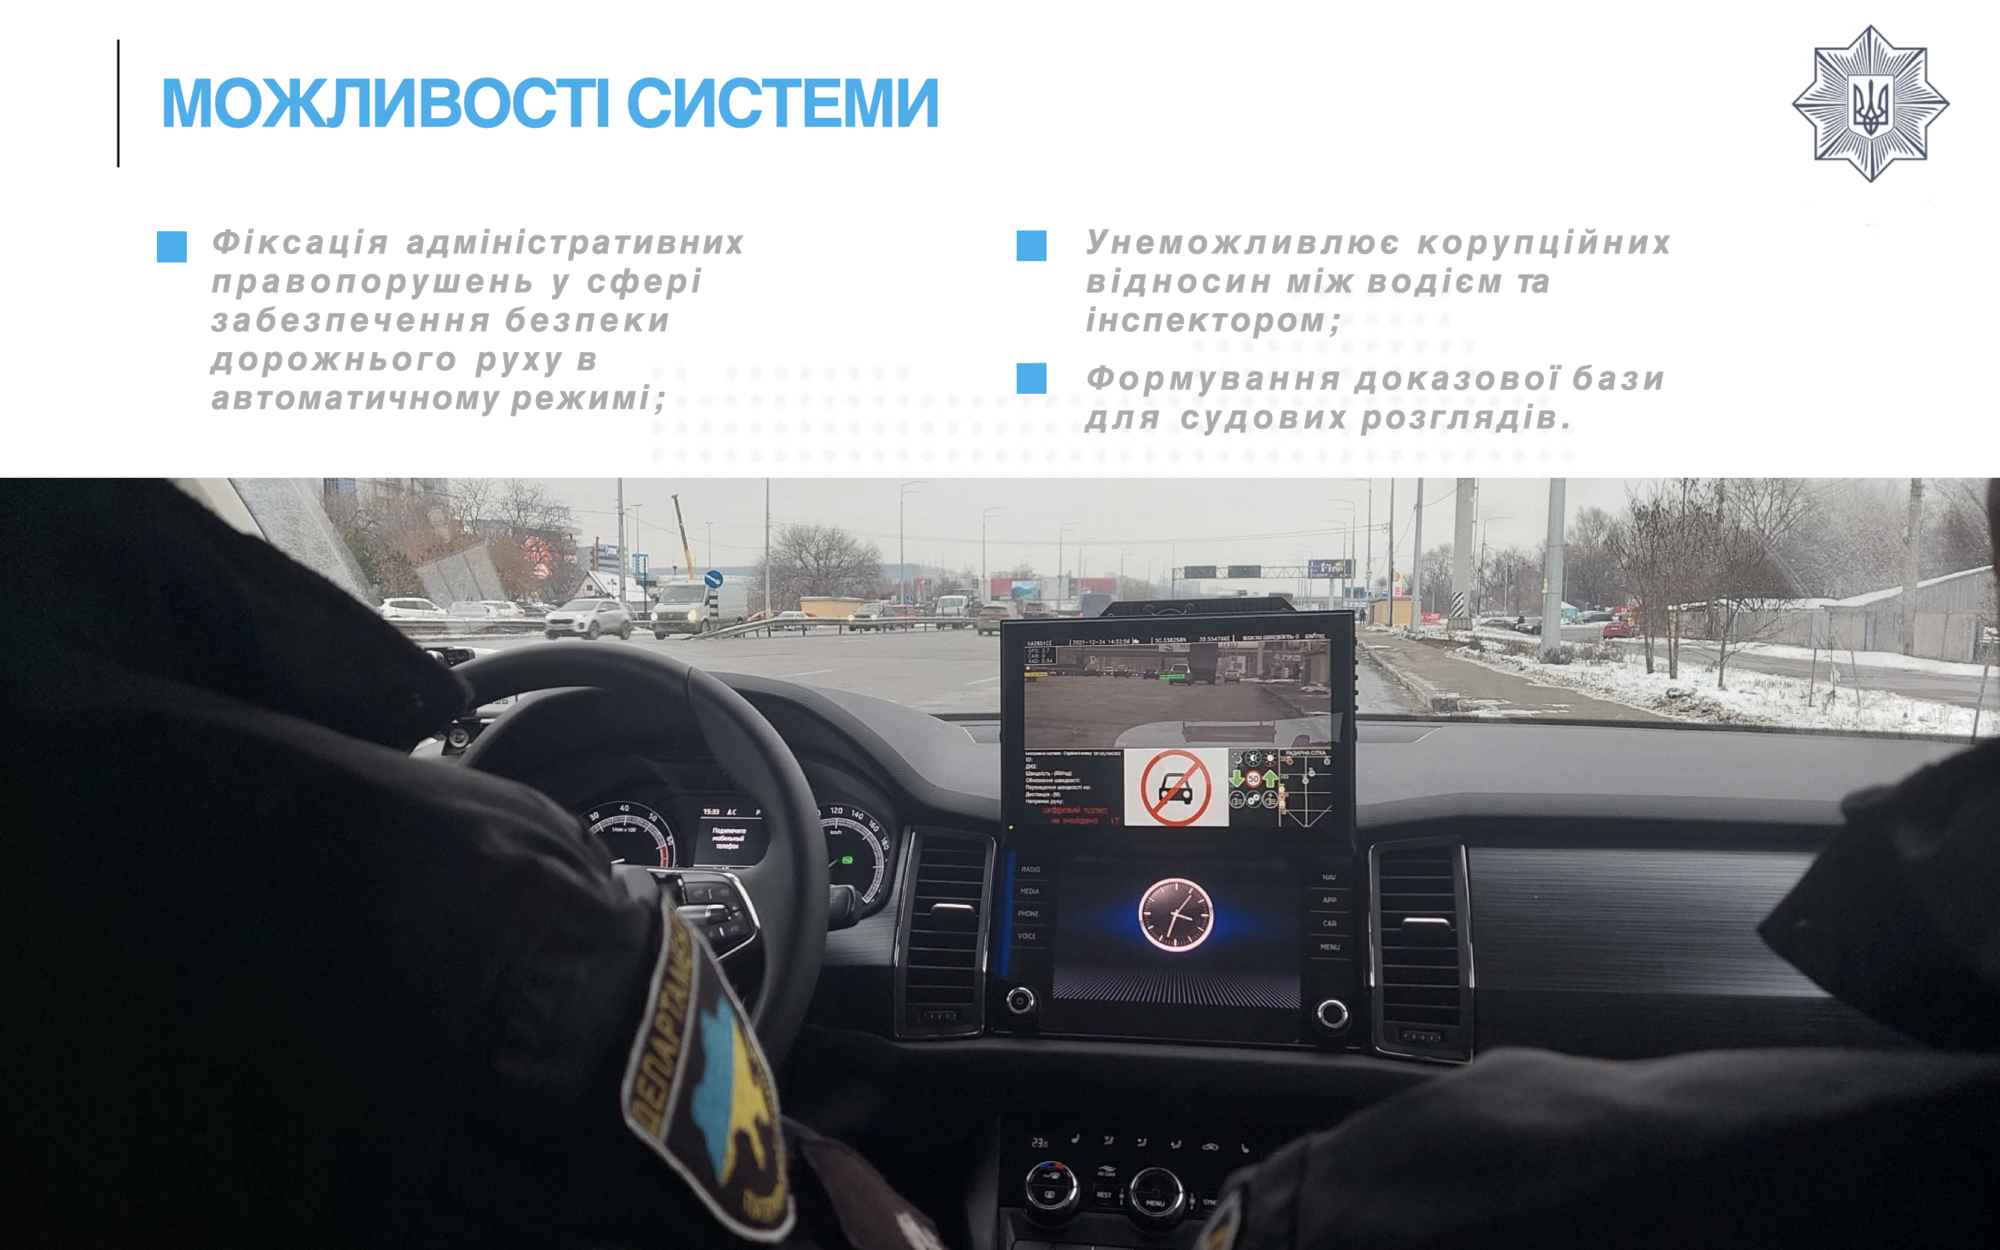 В Україні на дороги виїхали авто-"фантоми" поліції: як вони влаштовані та які порушення фіксуватимуть. Відео